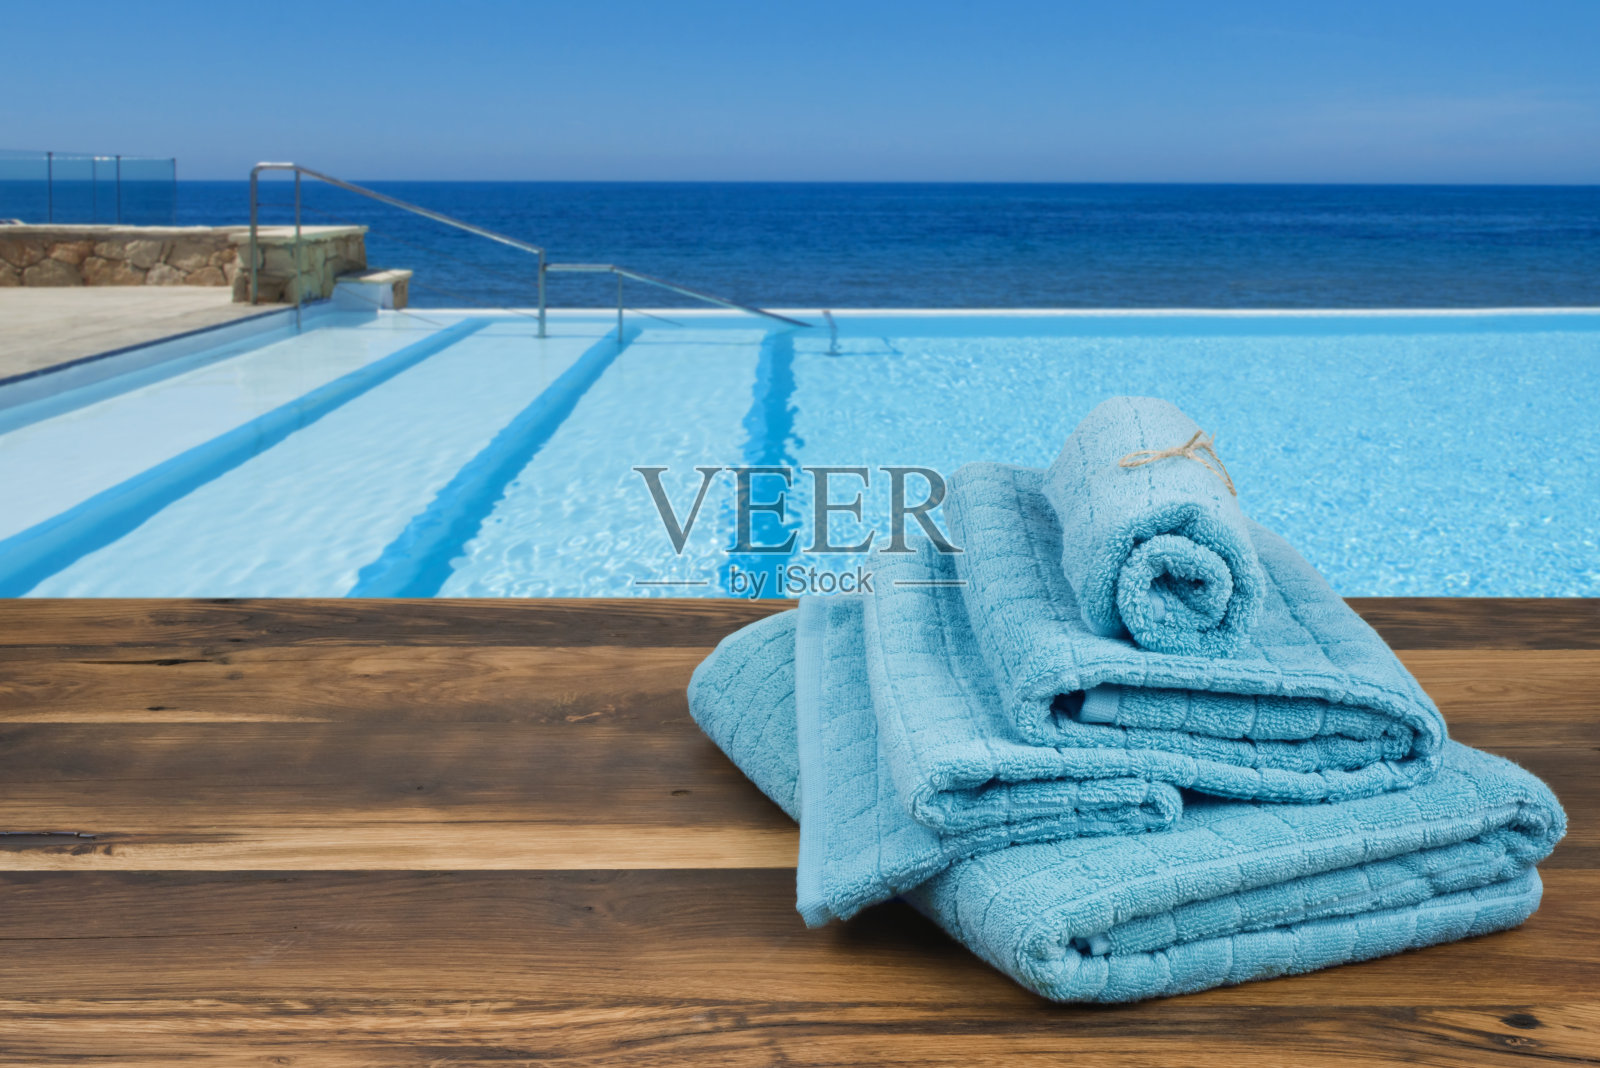 木制毛巾盖上模糊的游泳池和大海背景照片摄影图片